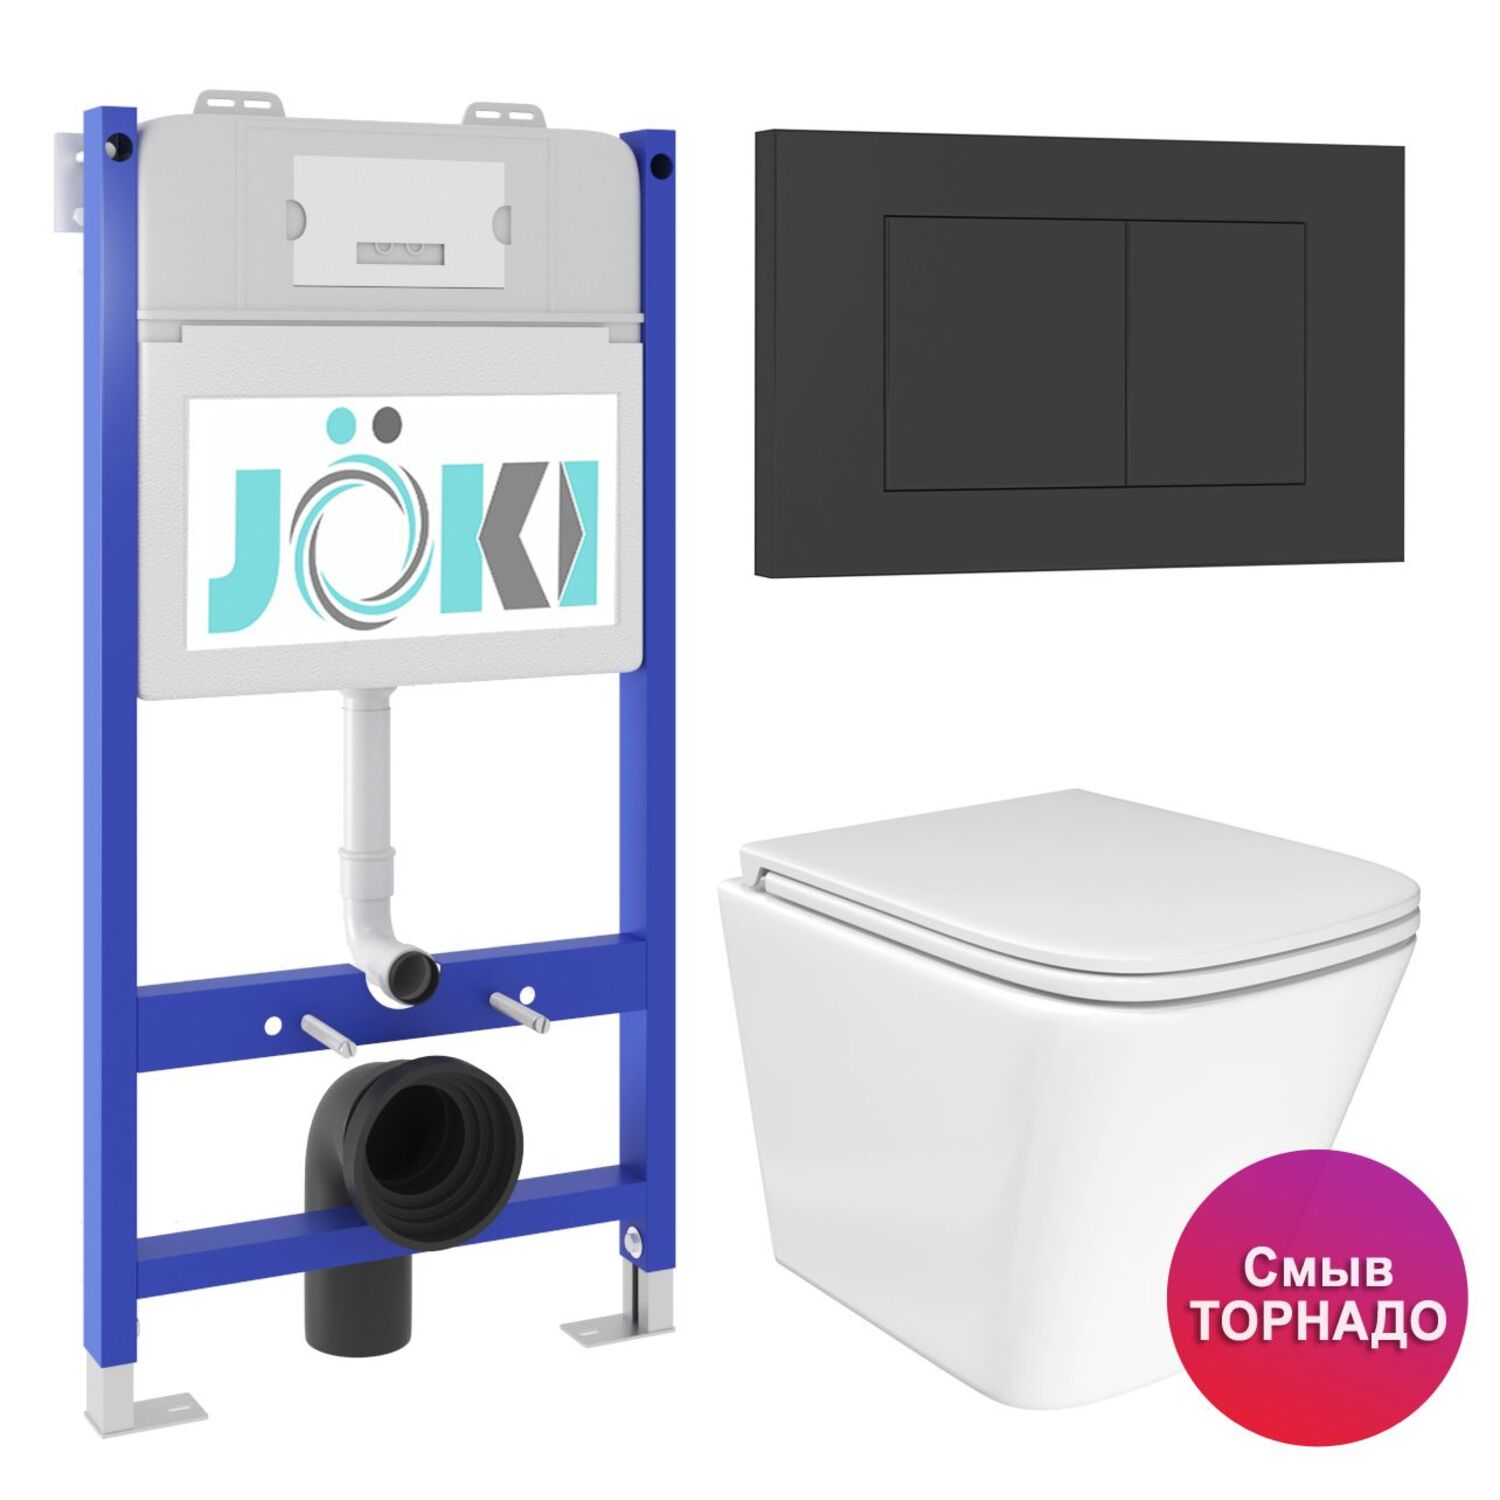 Комплект: JOKI Инсталляция JK03351+Кнопка JK013525BM черный+Verna T JK3031025 унитаз белый, смыв Торнадо